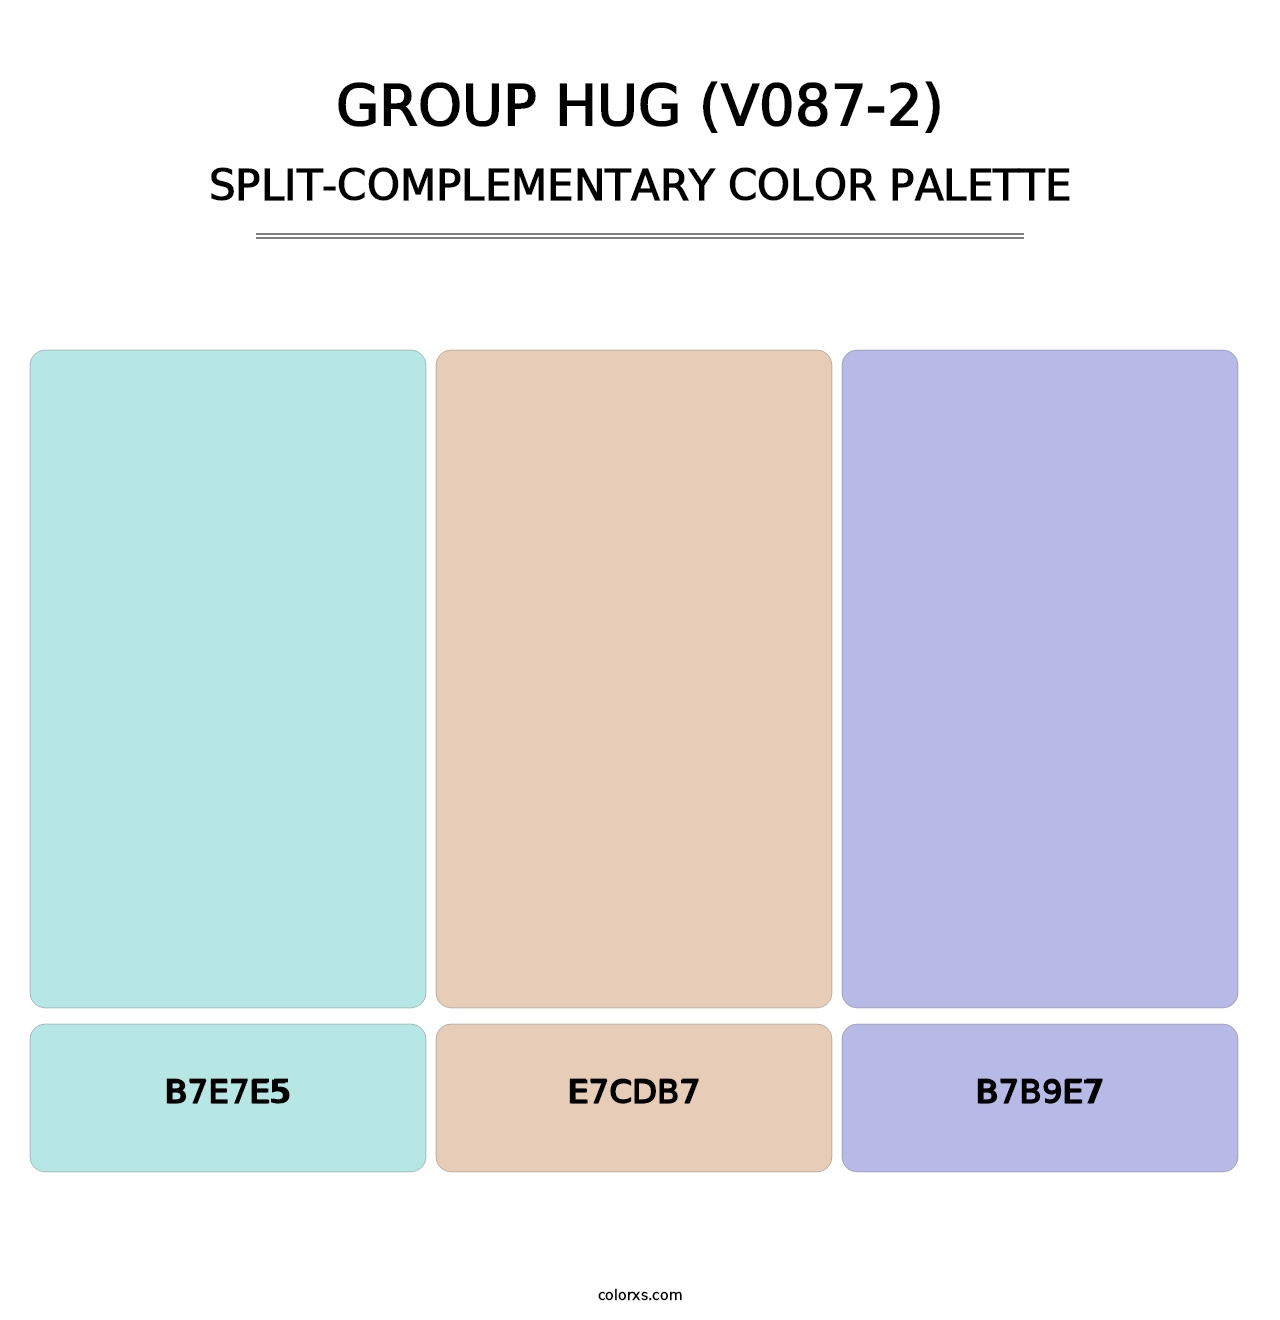 Group Hug (V087-2) - Split-Complementary Color Palette